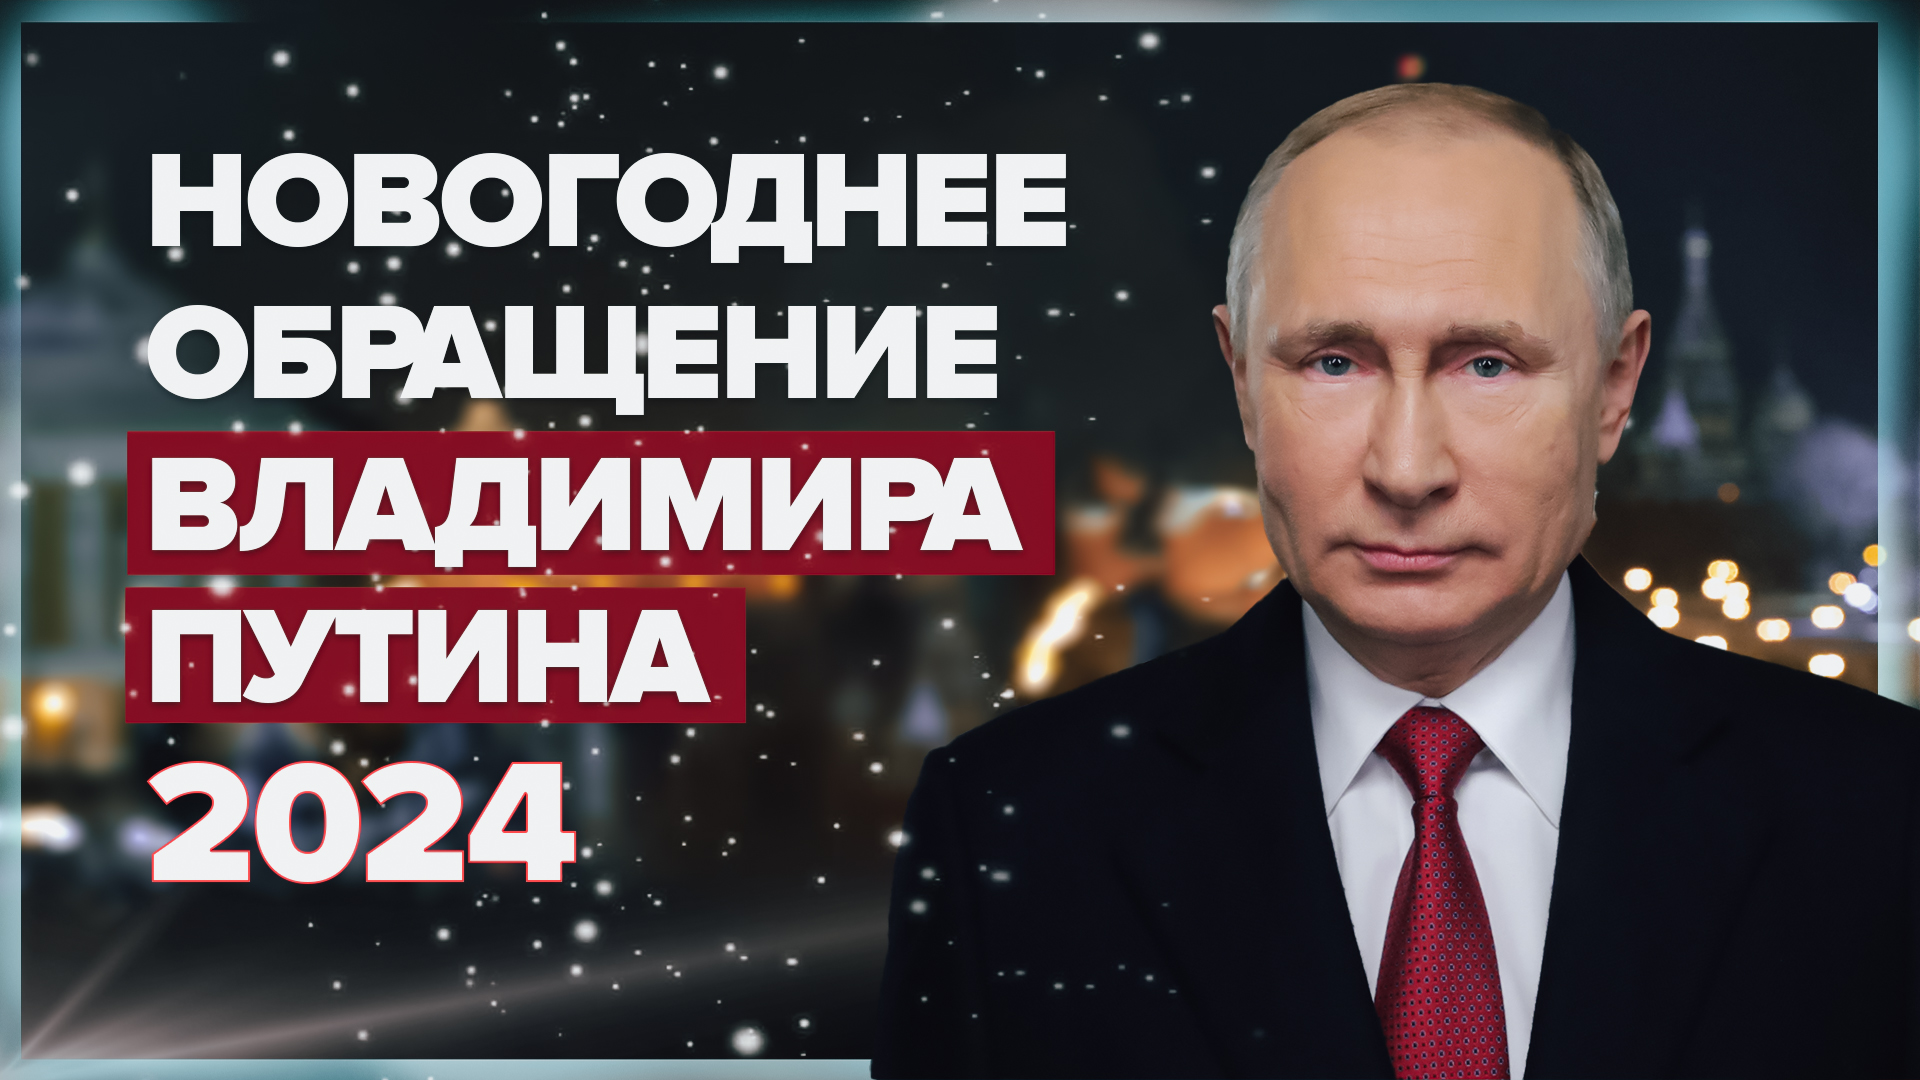 Новогоднее обращение Владимира Путина — 2024